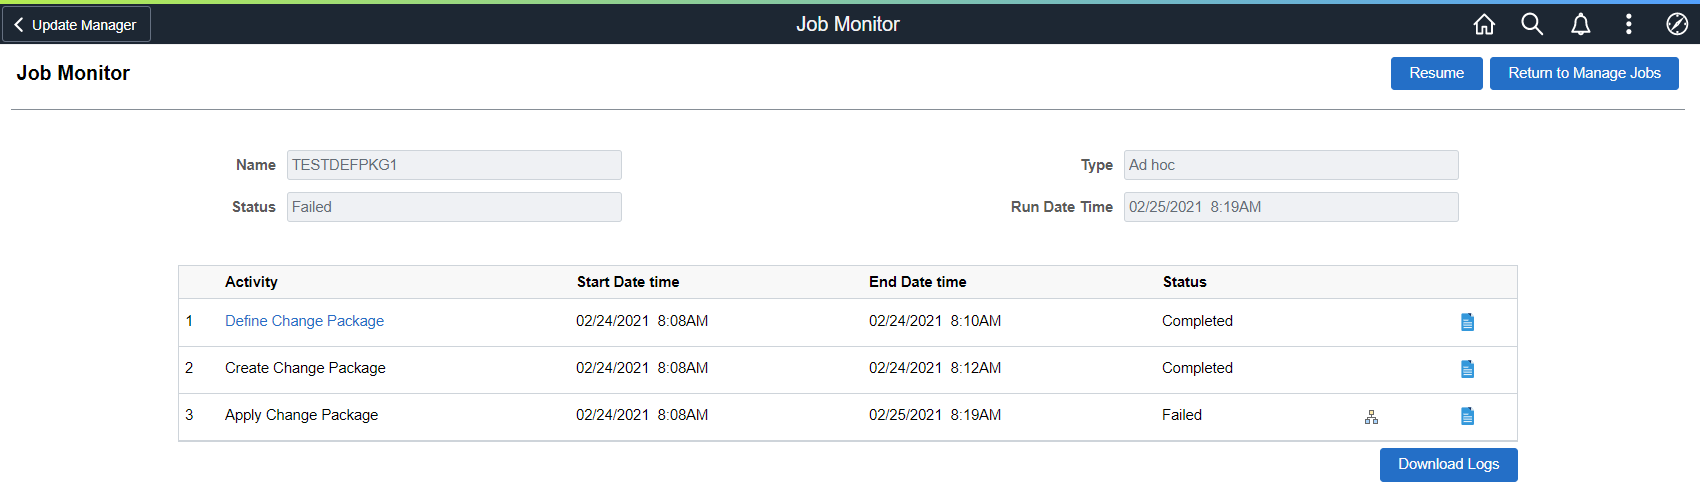 Job Monitor page